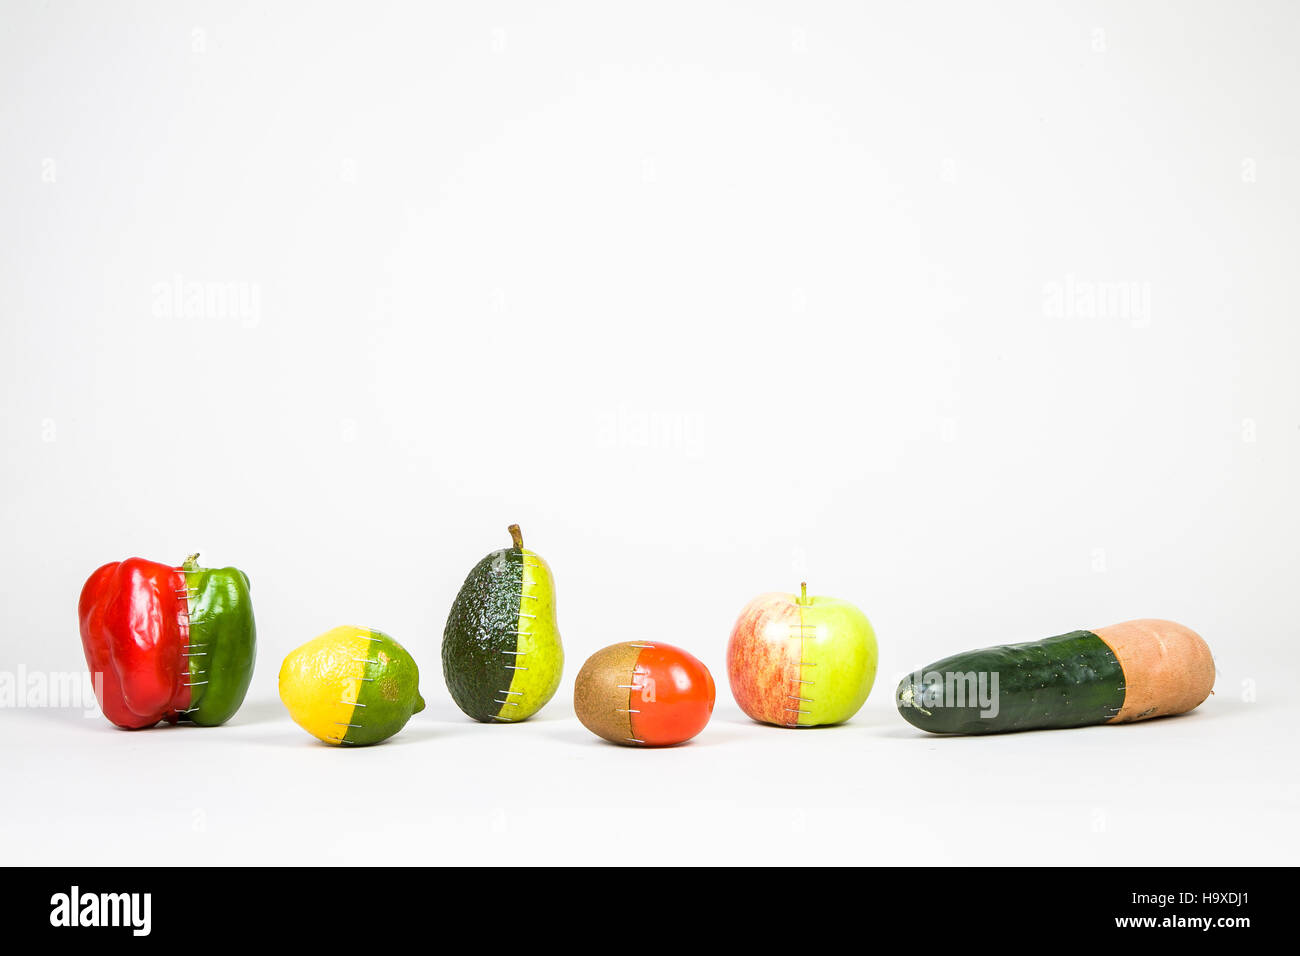 Frankenfruit - die gesamte Kollektion. Jede dieser kann auch separat als eigene hochauflösende Bild gefunden. Stockfoto